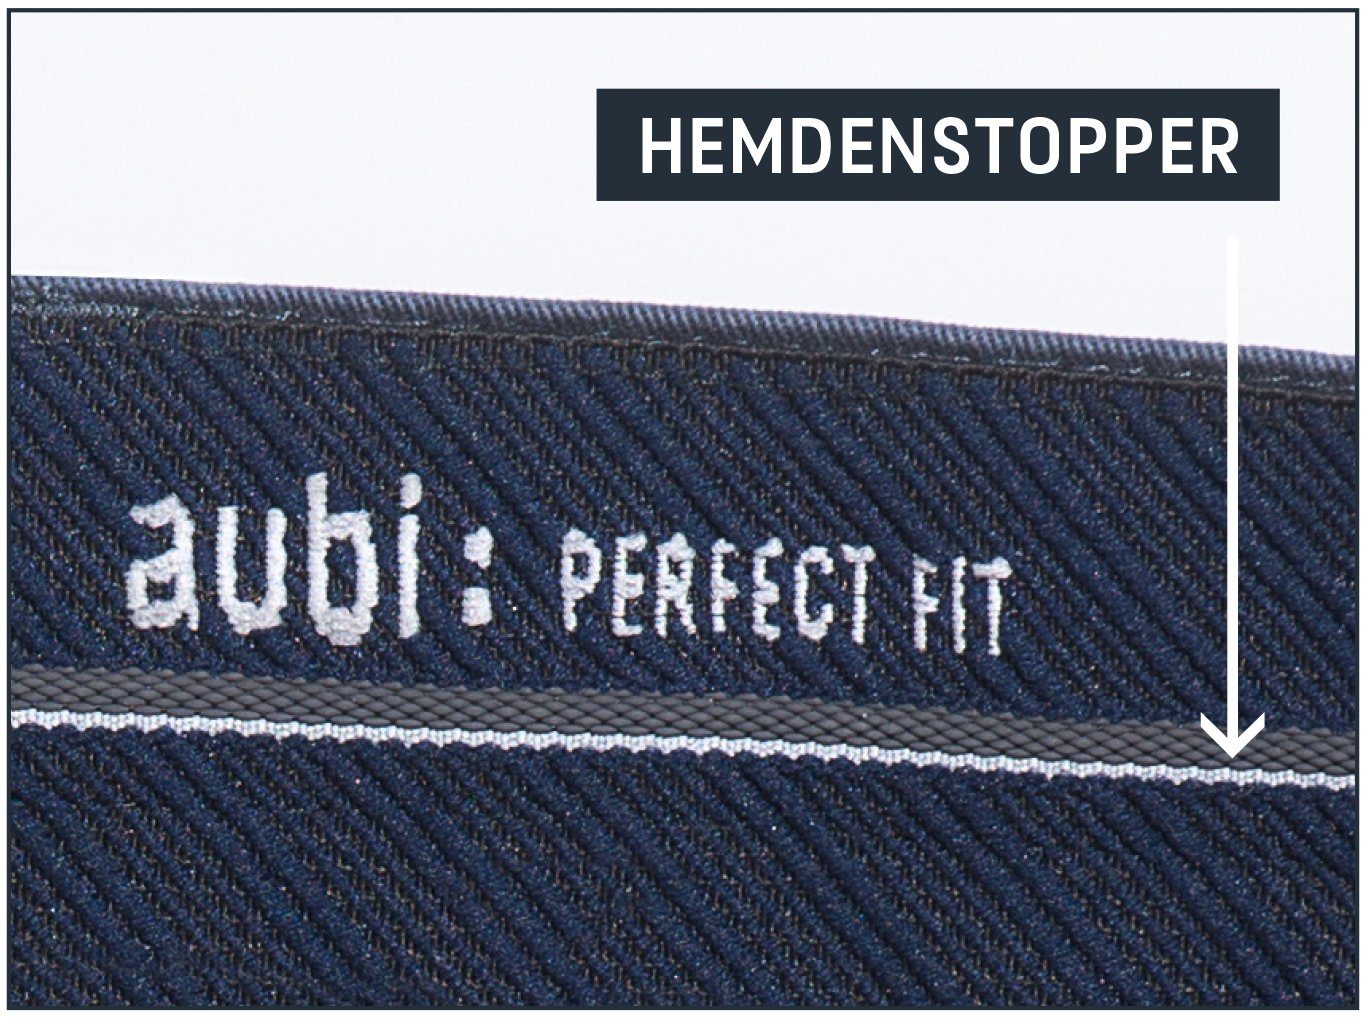 aus High 526 aubi: Perfect Stretch Jeans Herren Sommer (43) Fit Hose Bequeme Flex aubi Modell bleached Baumwolle Jeans